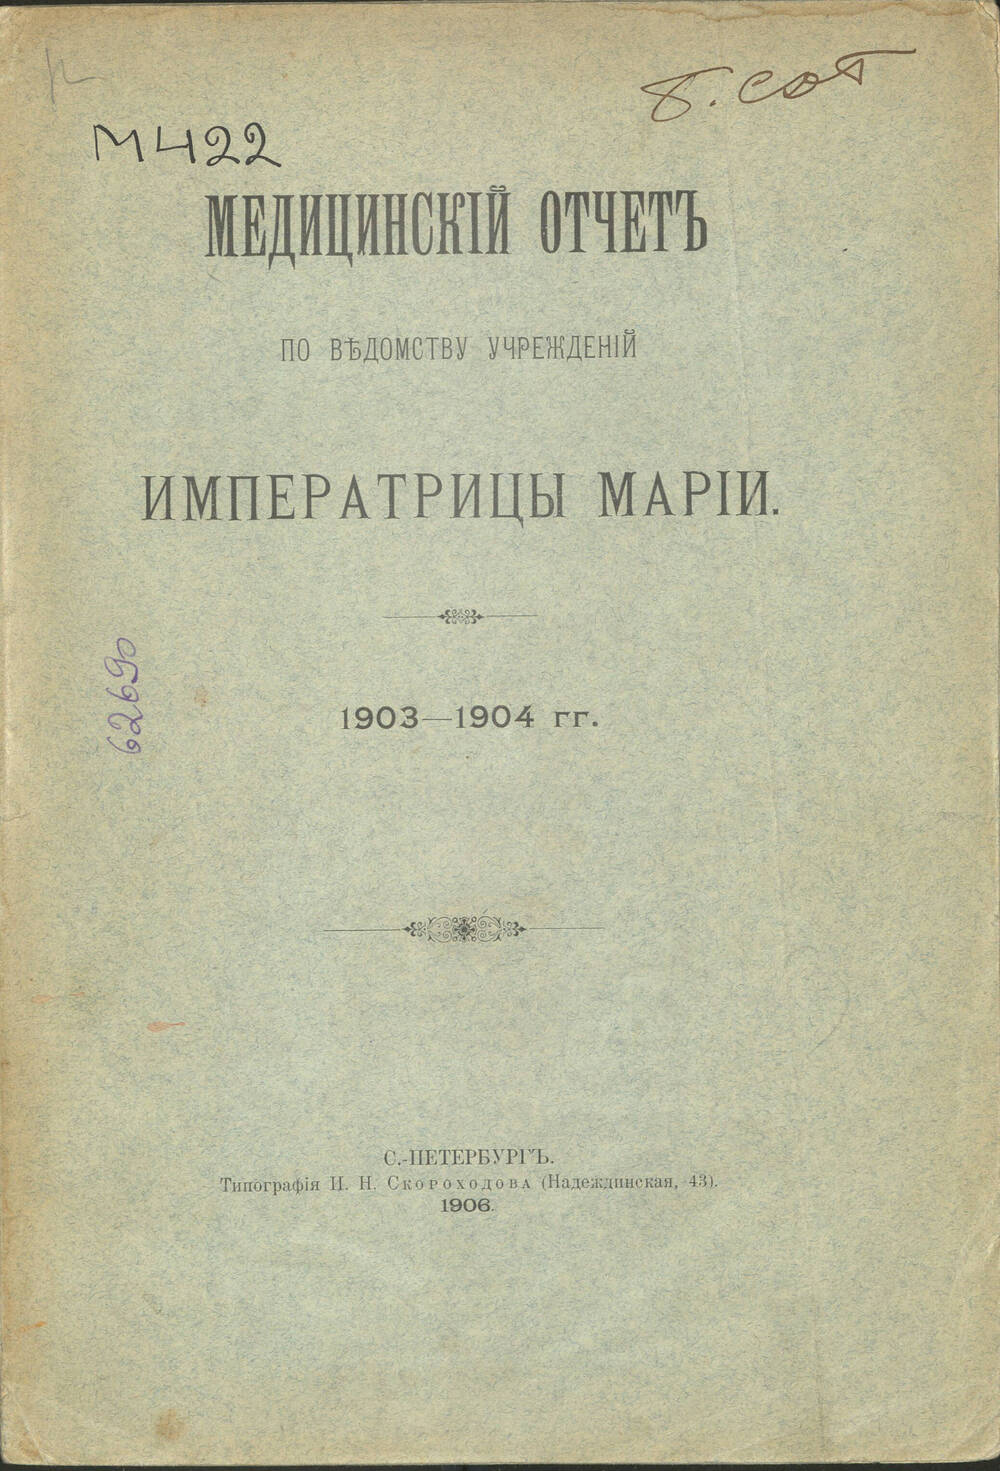 Книга Медицинский отчет по ведомству учреждений Императрицы Марии 1903-1904 гг.